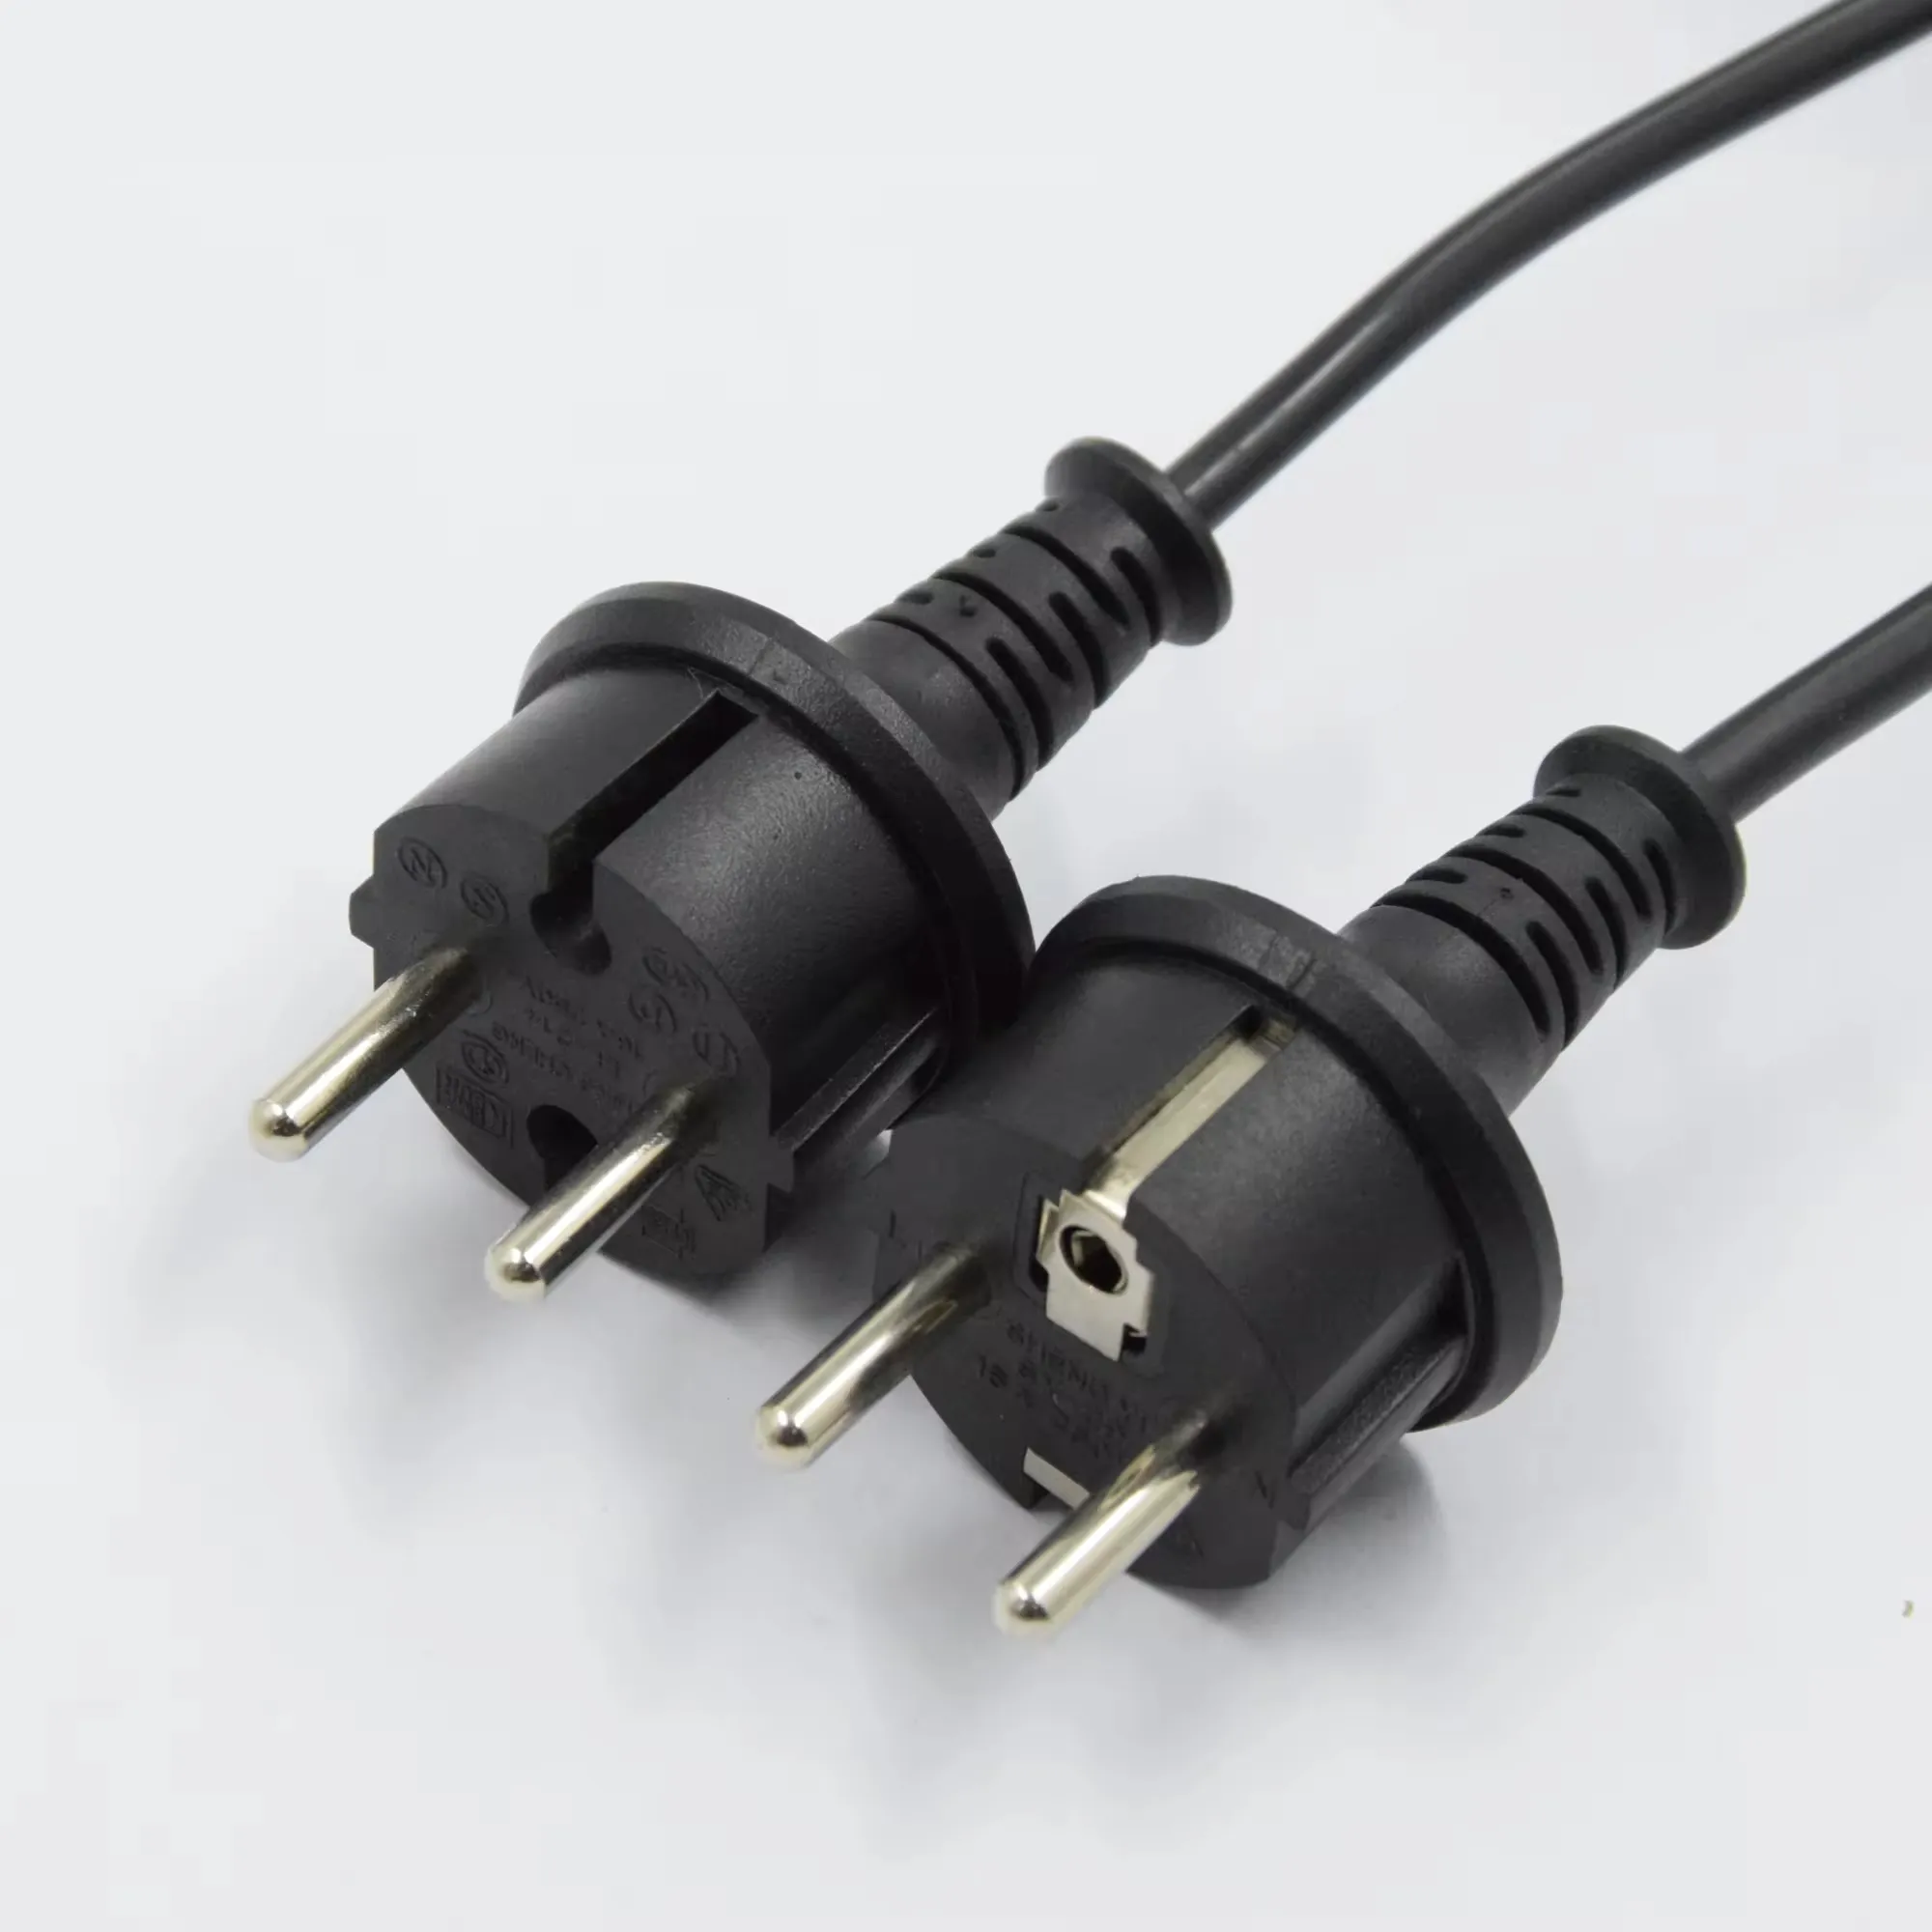 Kabel ekstensi USA EU CA kabel daya elektrik steker daya 16A bersertifikat 250V kabel daya AC colokan tahan air